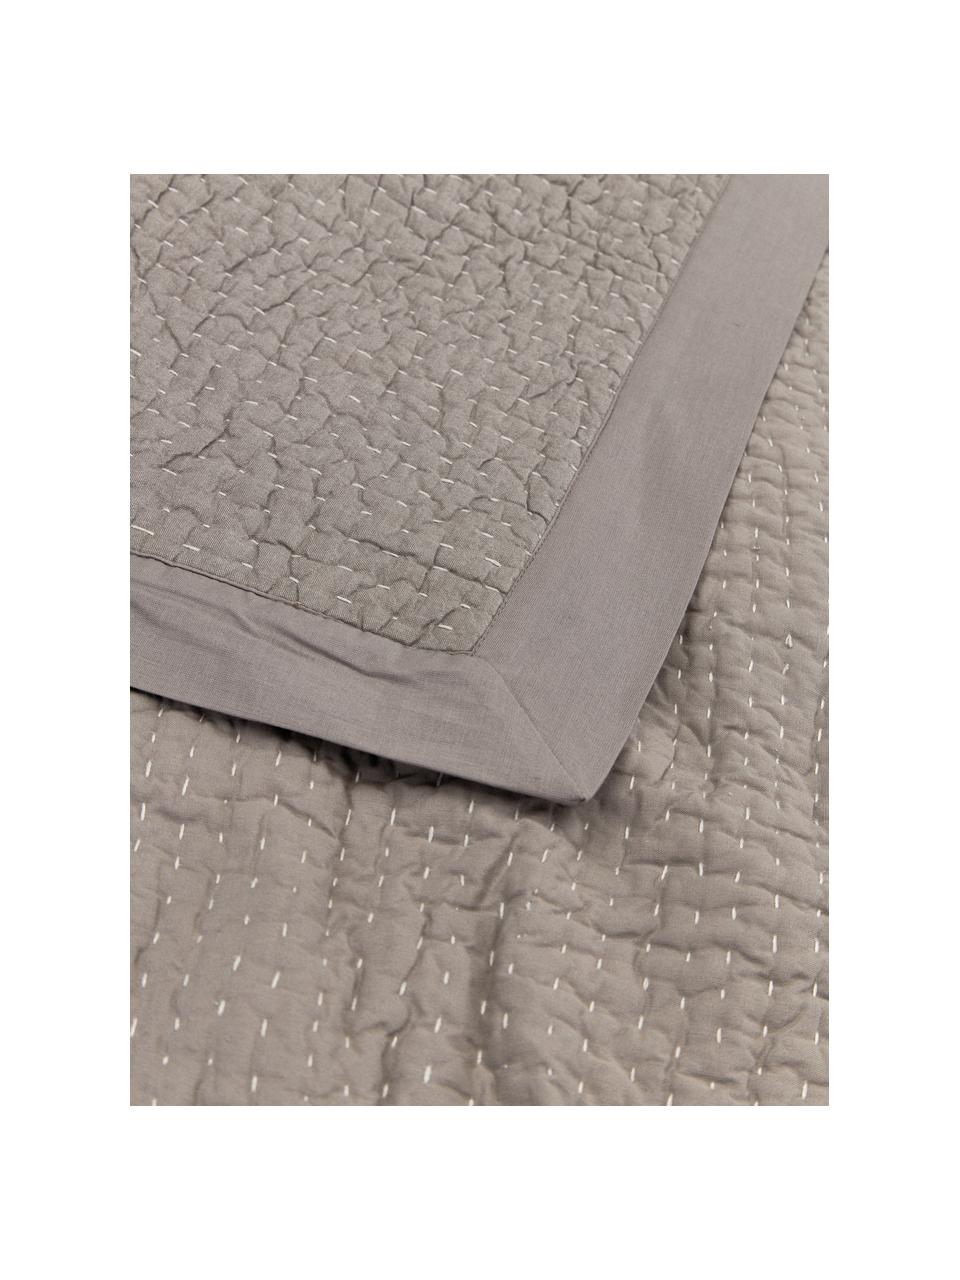 Colcha de algodón Stripes, Funda: 100% algodón, Gris, An 180 x L 250 cm (para camas de 140 x 200 cm)